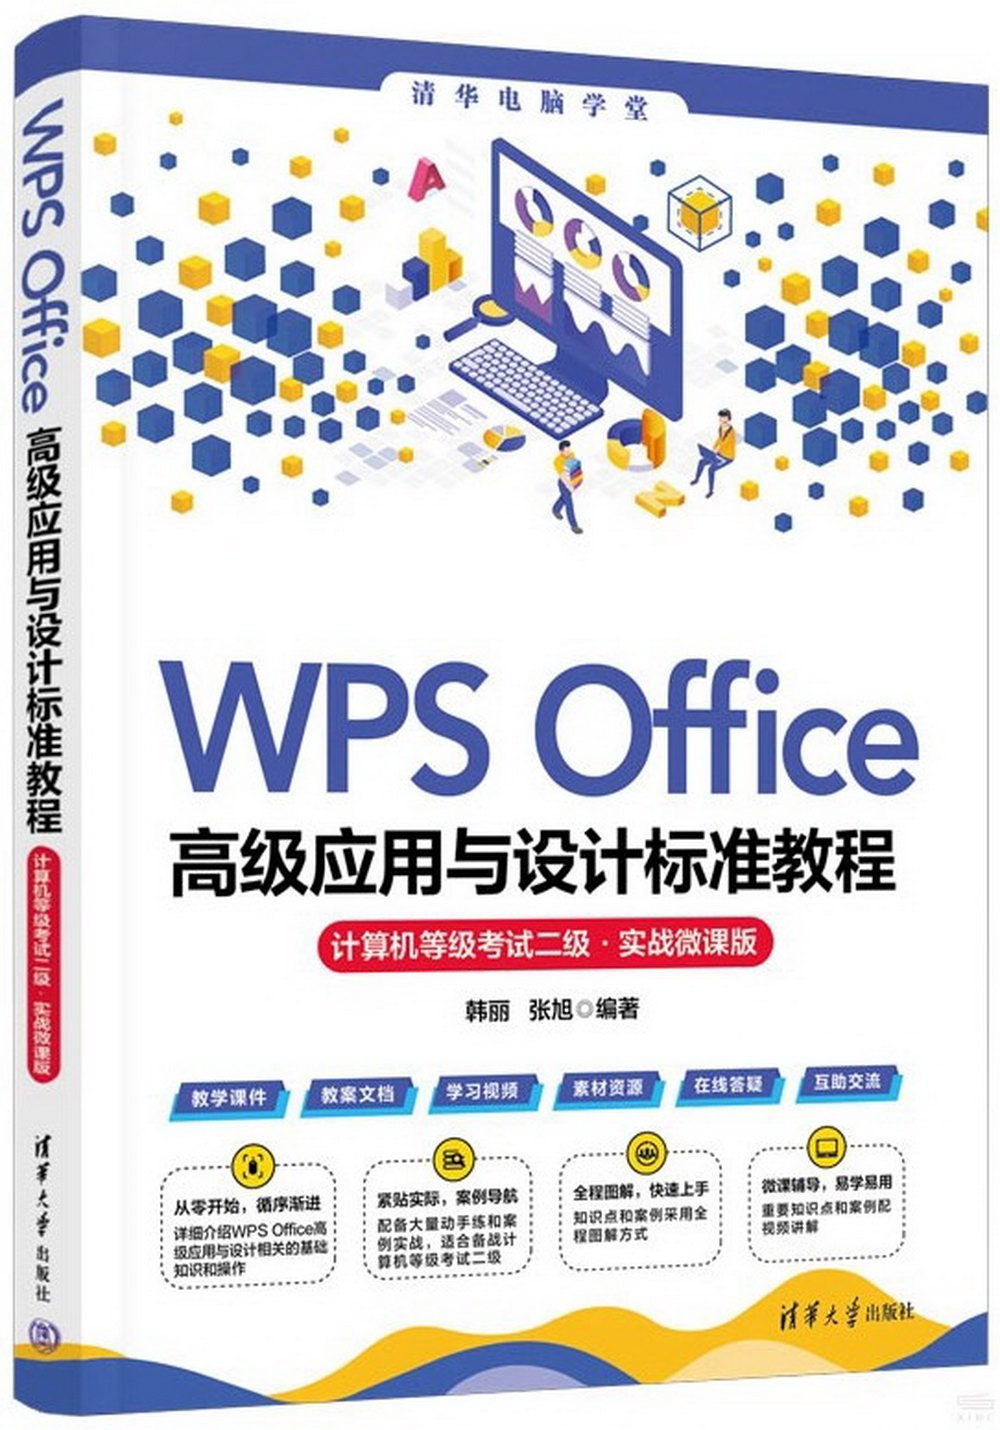 WPS Office高級應用與設計標準教程：計算機等級考試二級（實戰微課版）